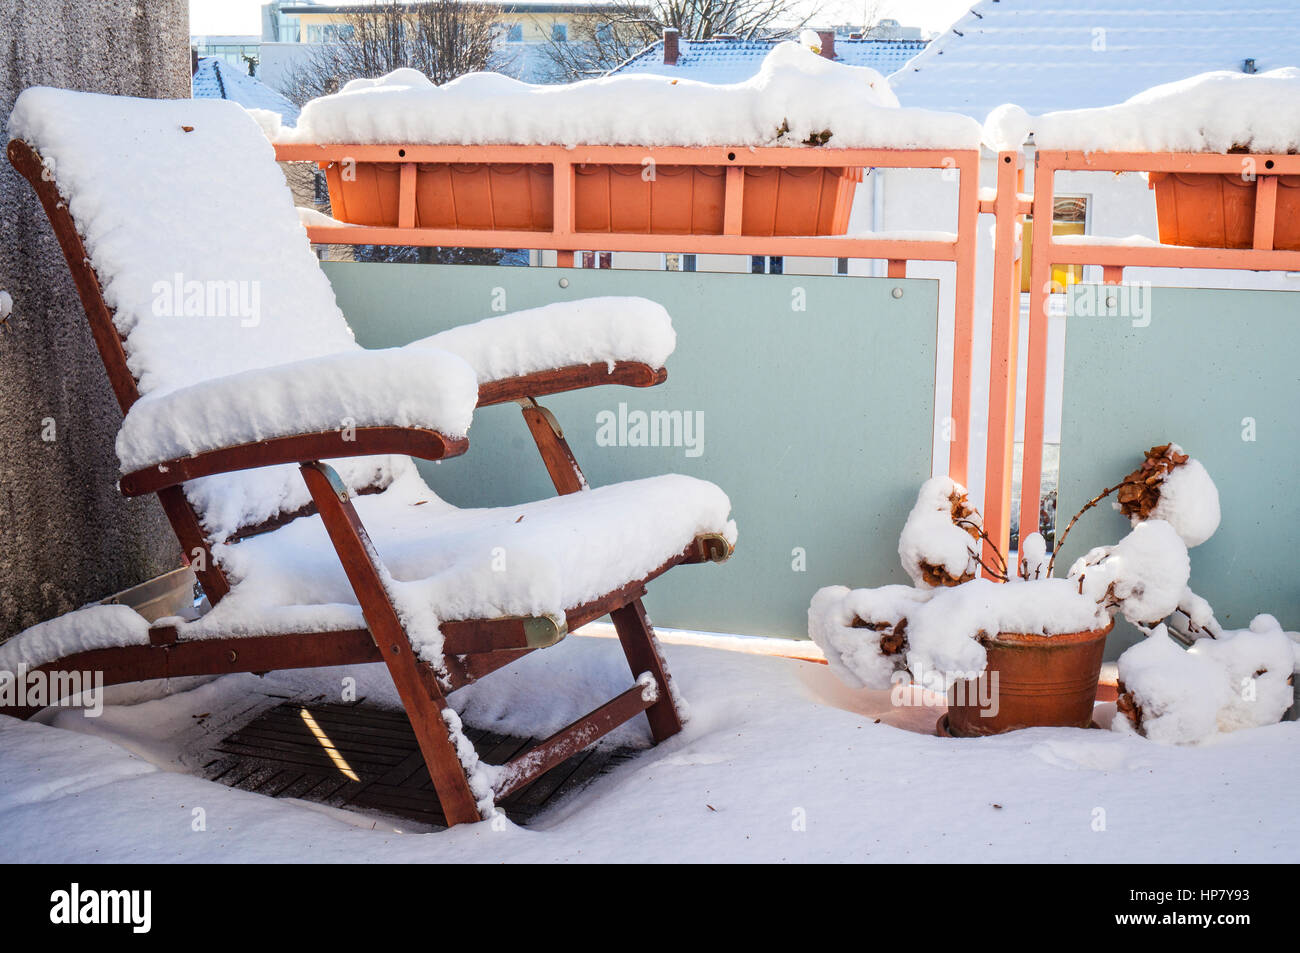 Schnee Covereddeck Liegestuhl steht im Winter auf verschneiten Balkon Stockfoto